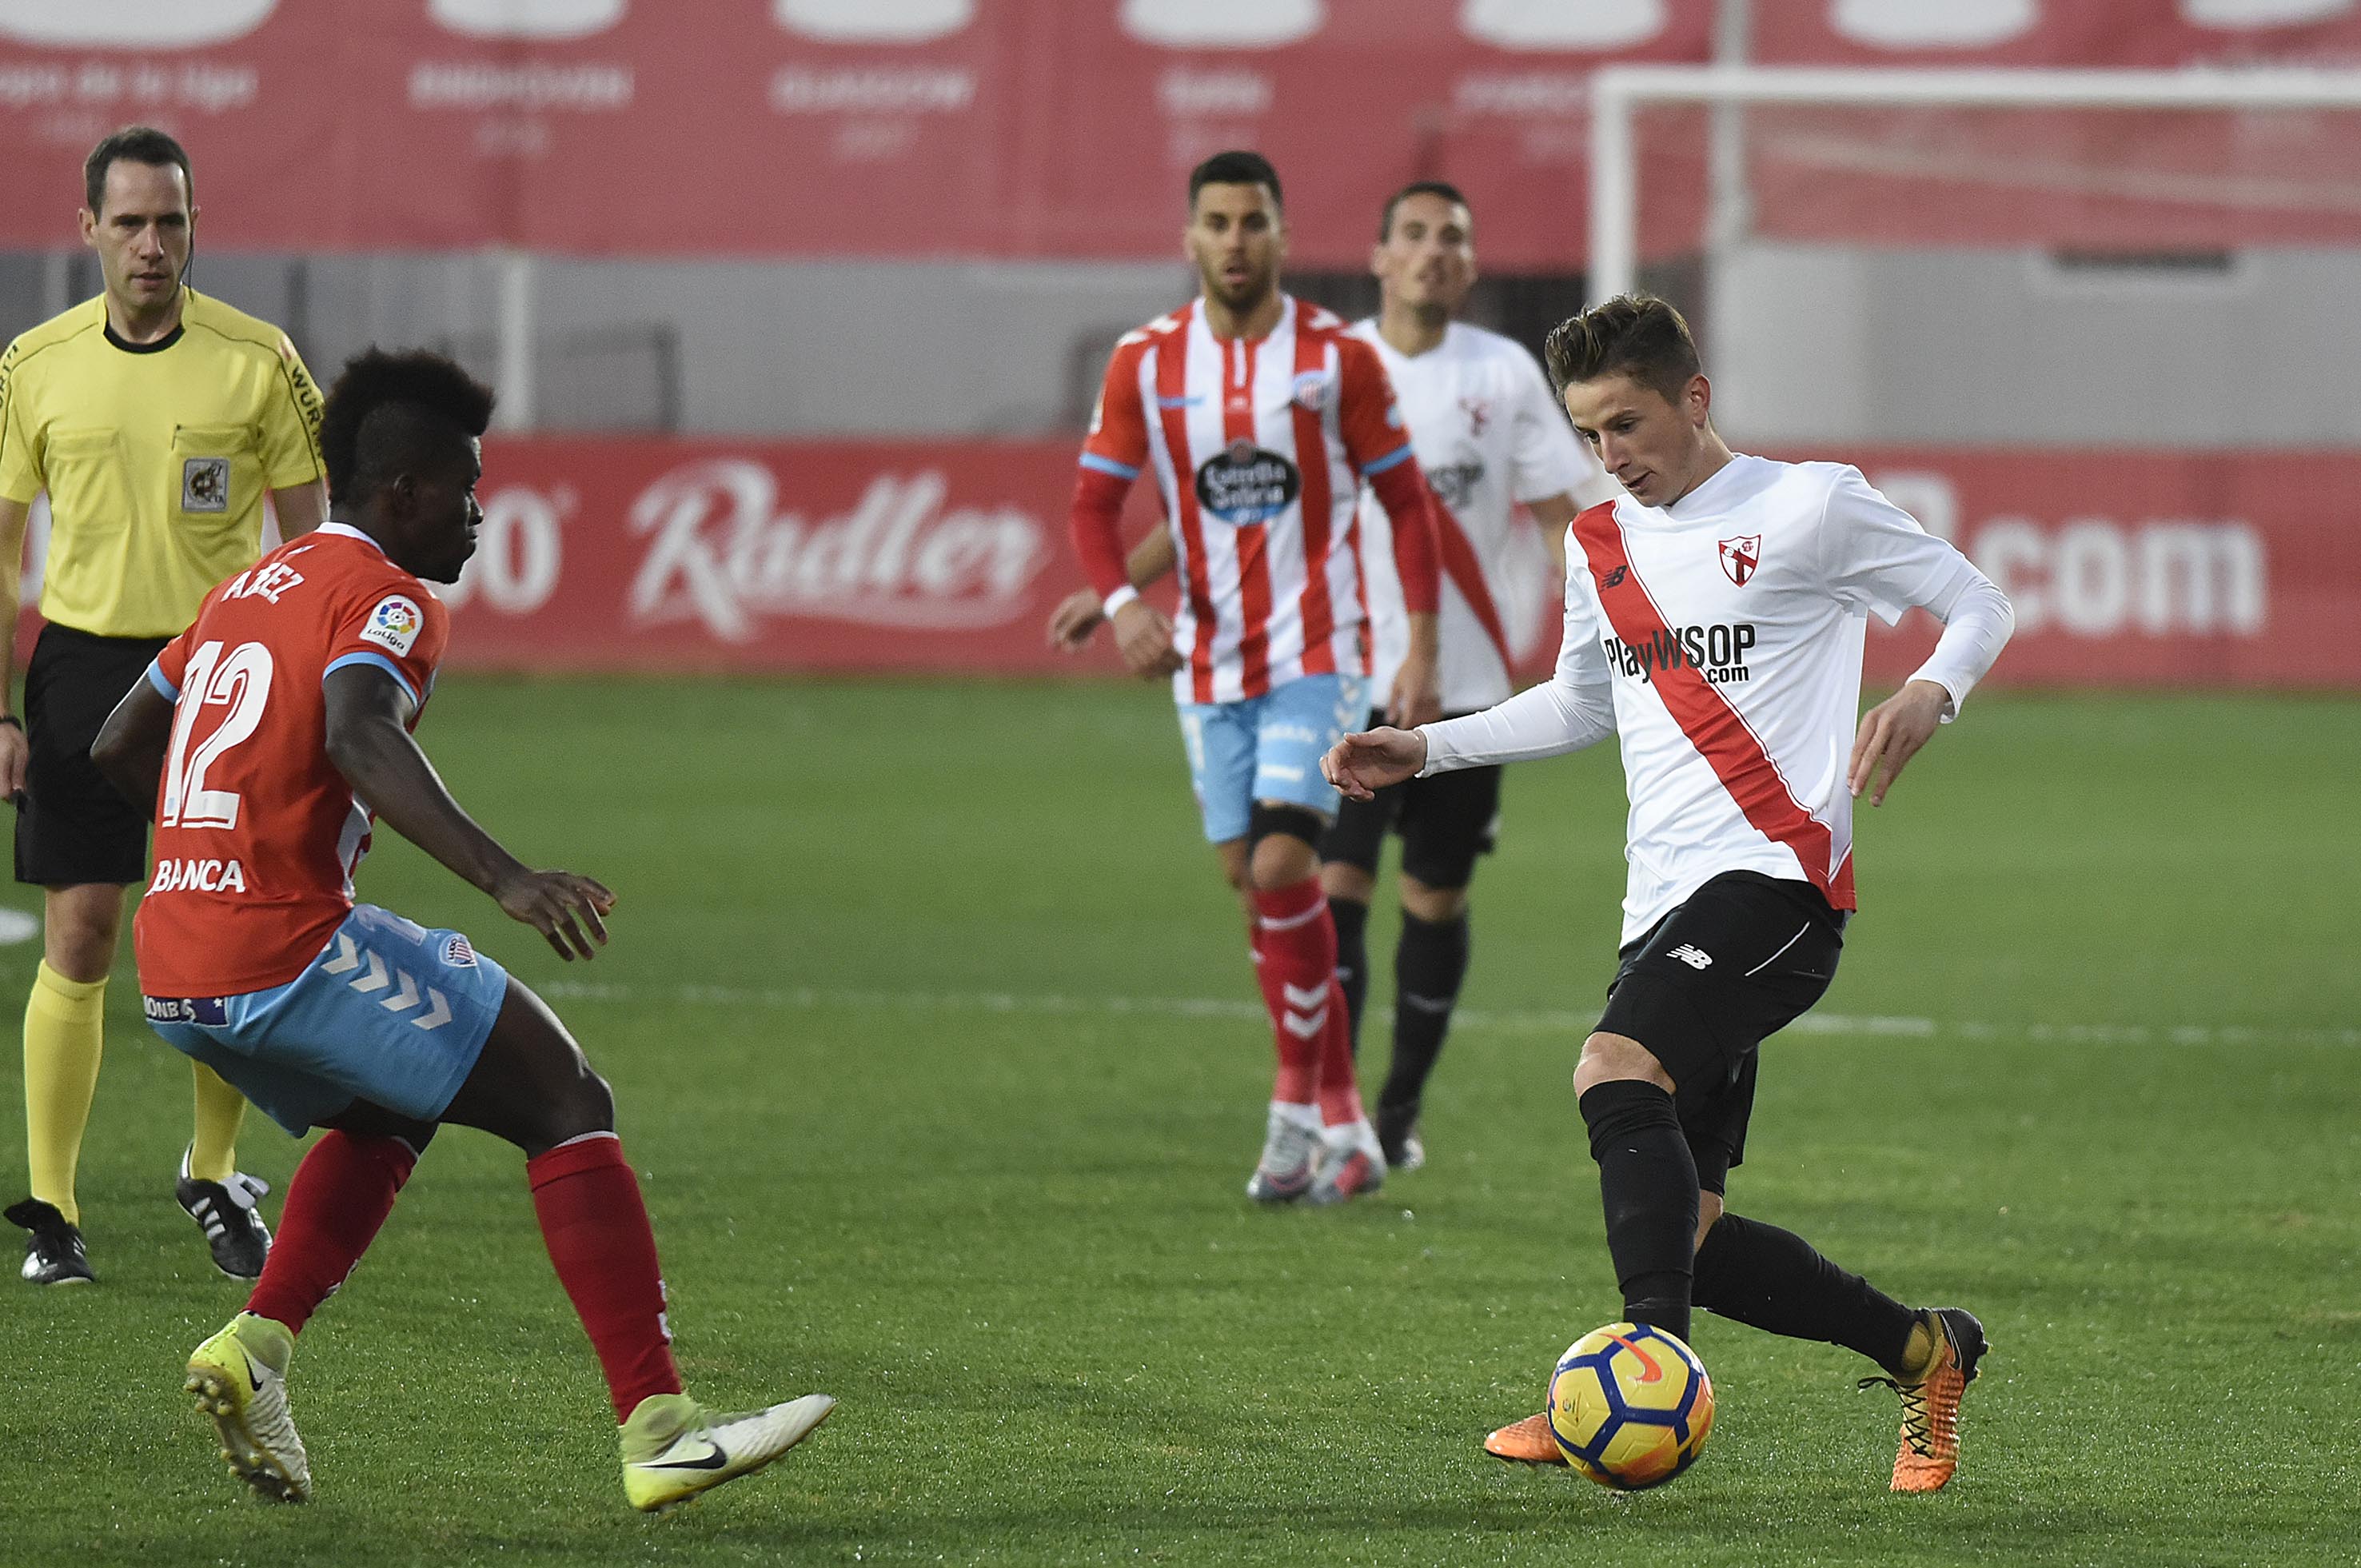 Olavide del Sevilla Atlético ante el CD Lugo